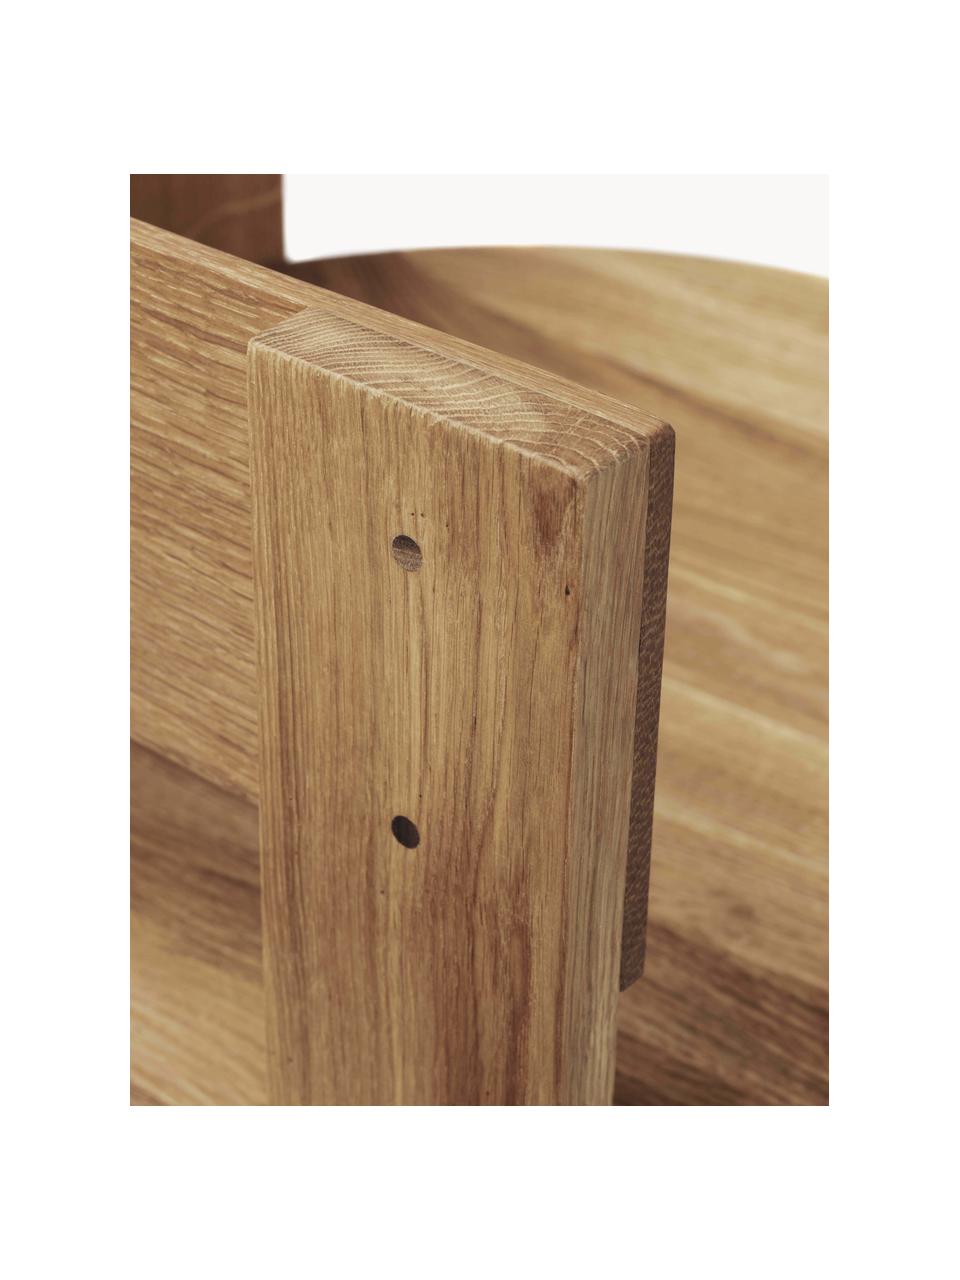 Drevená stolička s opierkami Collector, Dubové a orechové drevo, ošetrené olejom, Dubové drevo, orechové drevo, Š 51 x H 51 cm